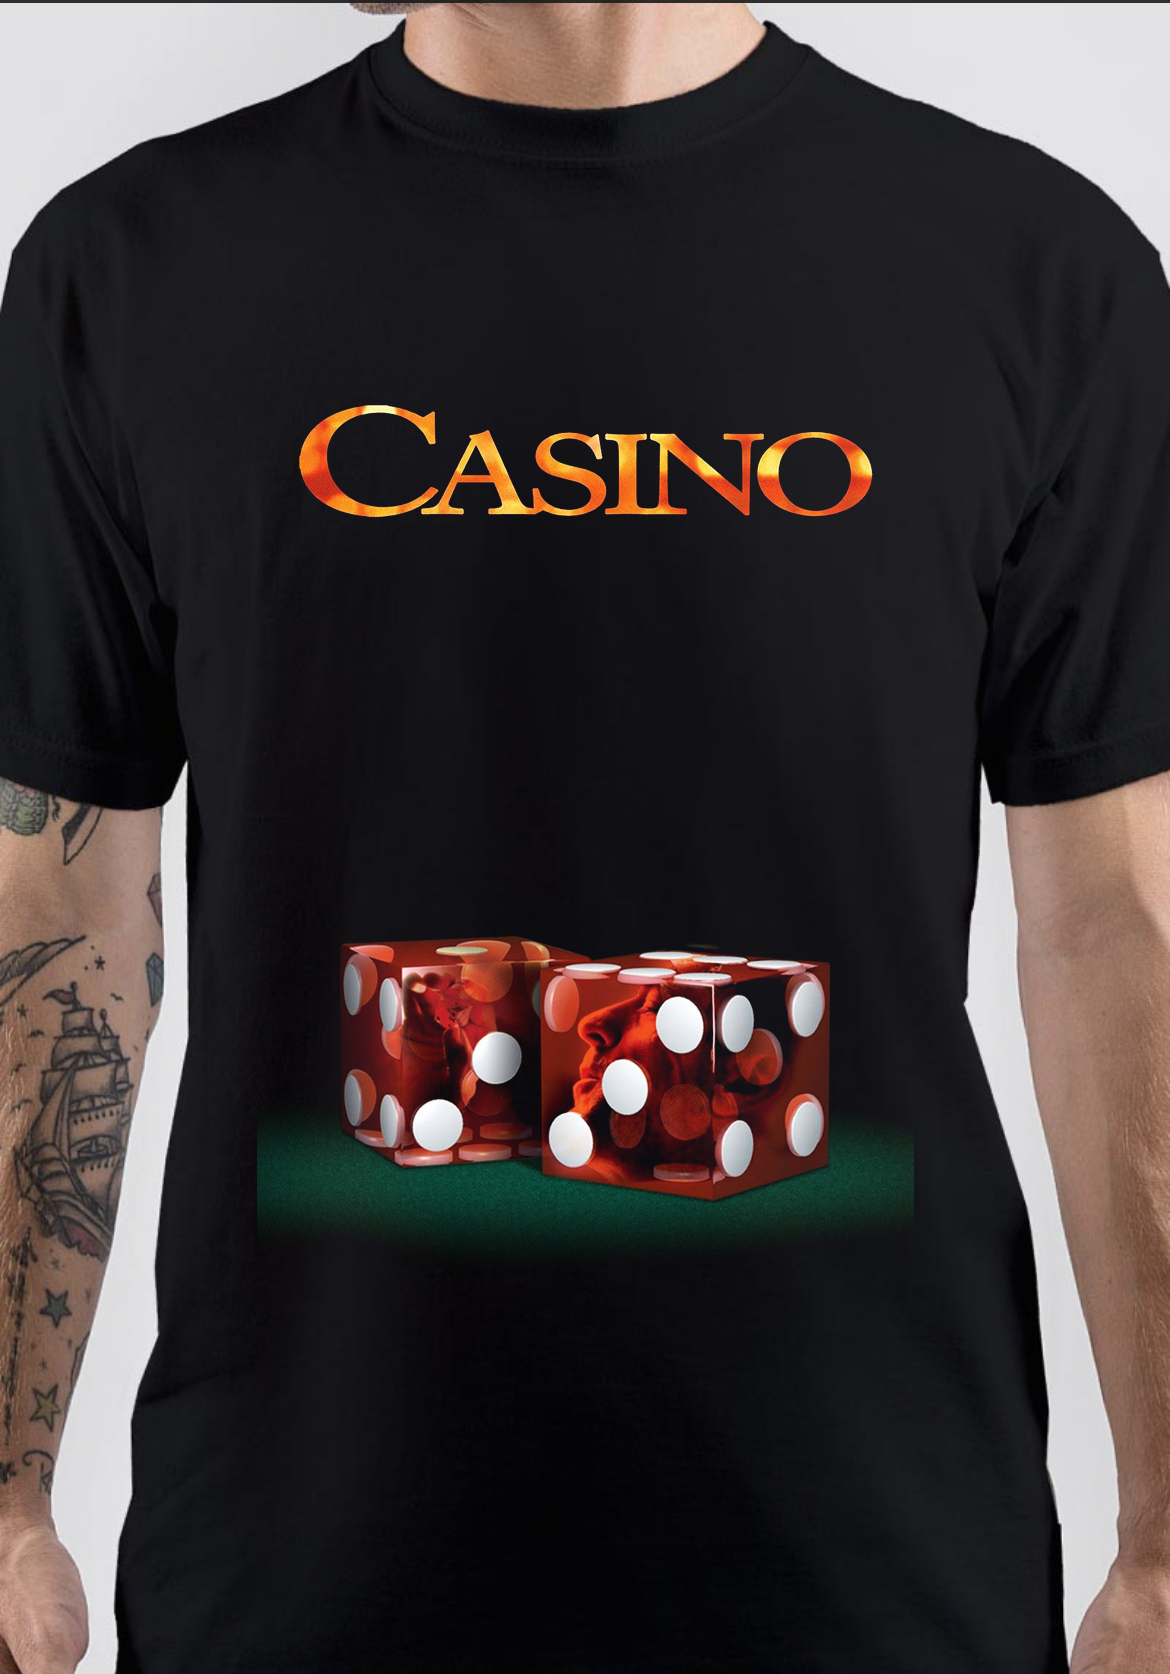 Casino T-Shirt And Merchandise